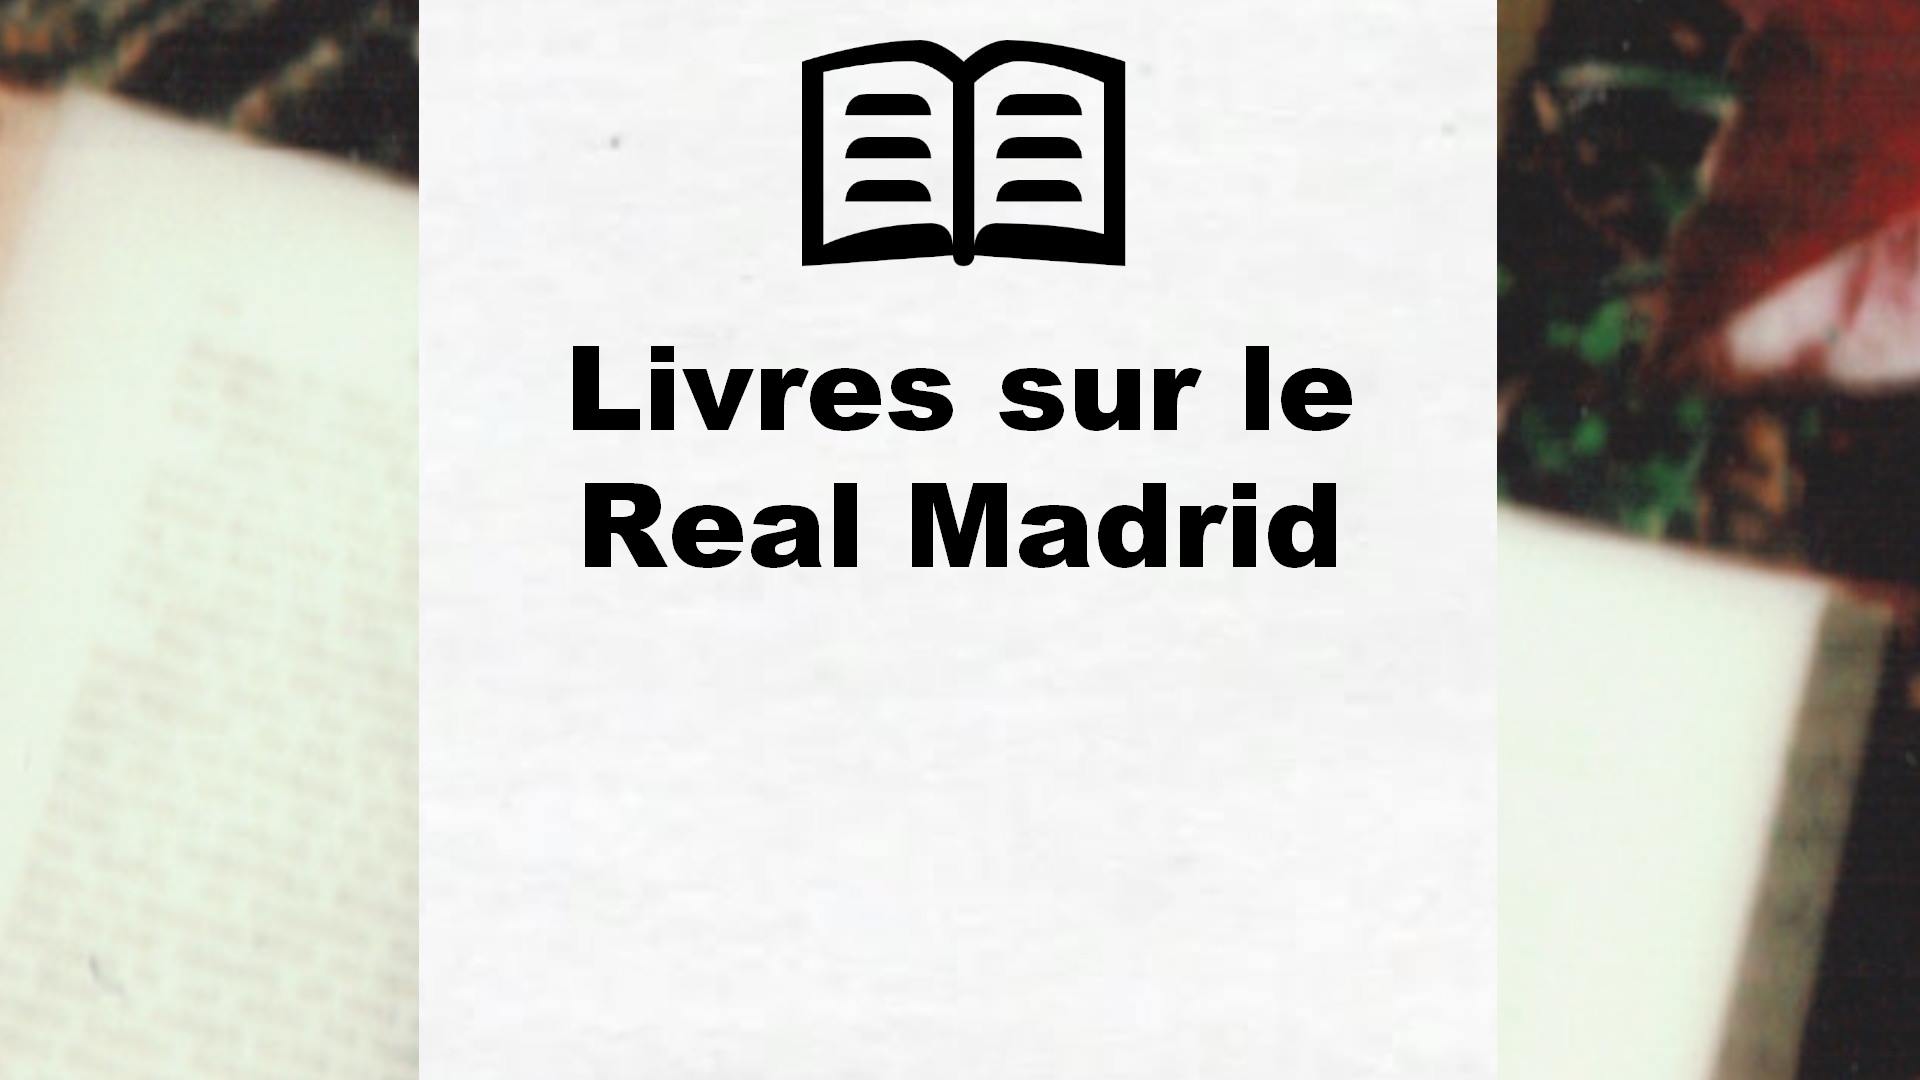 Livres sur le Real Madrid